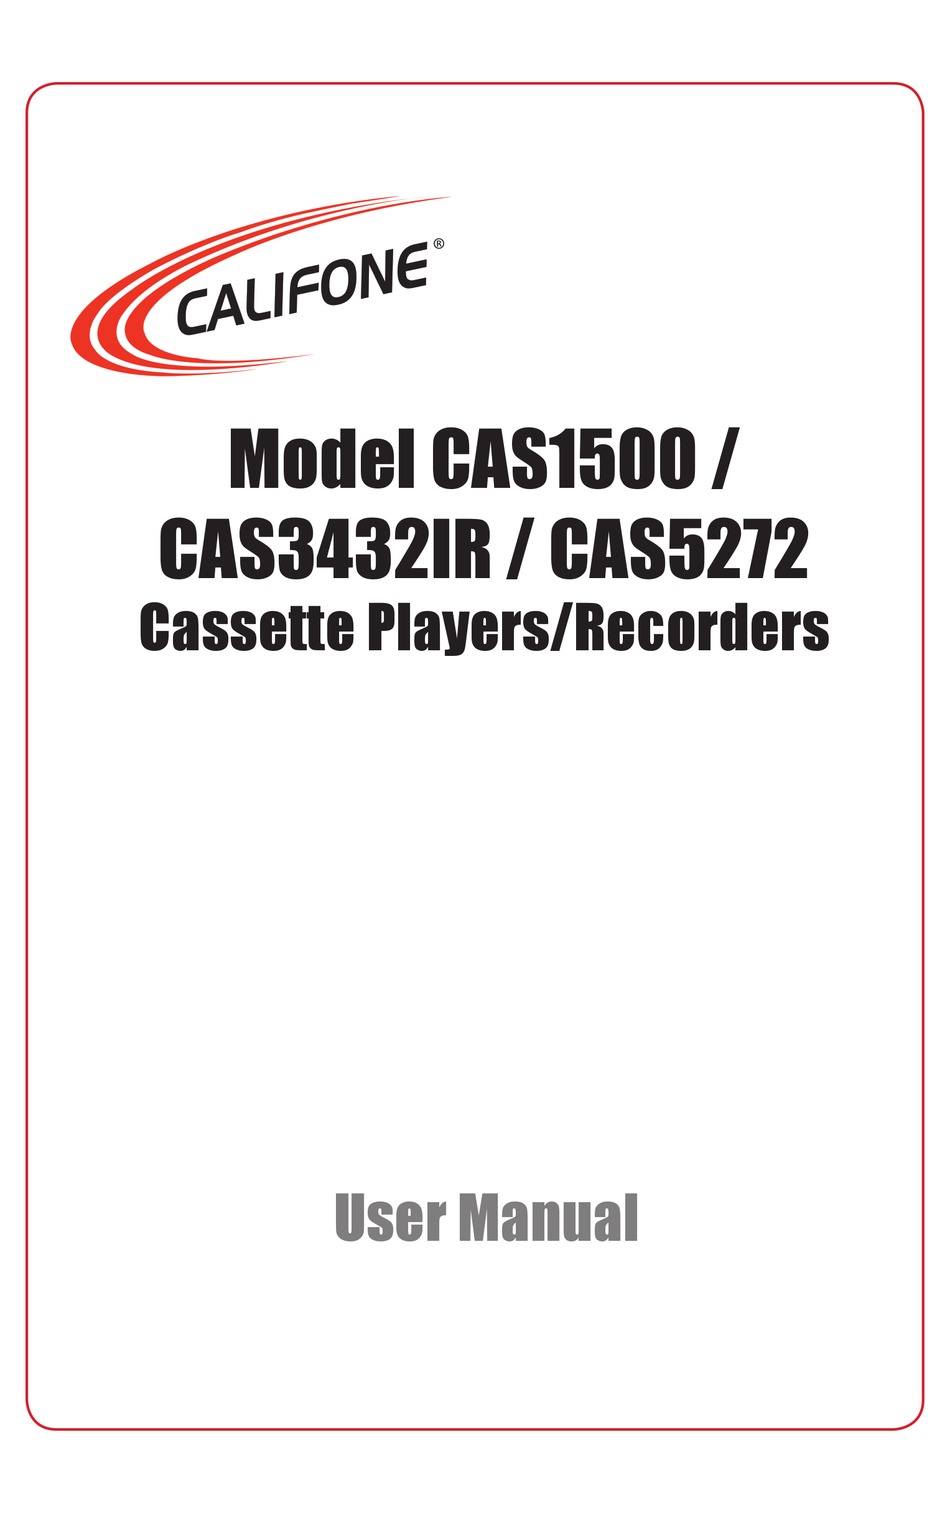 CALIFONE CAS1500 USER MANUAL Pdf Download